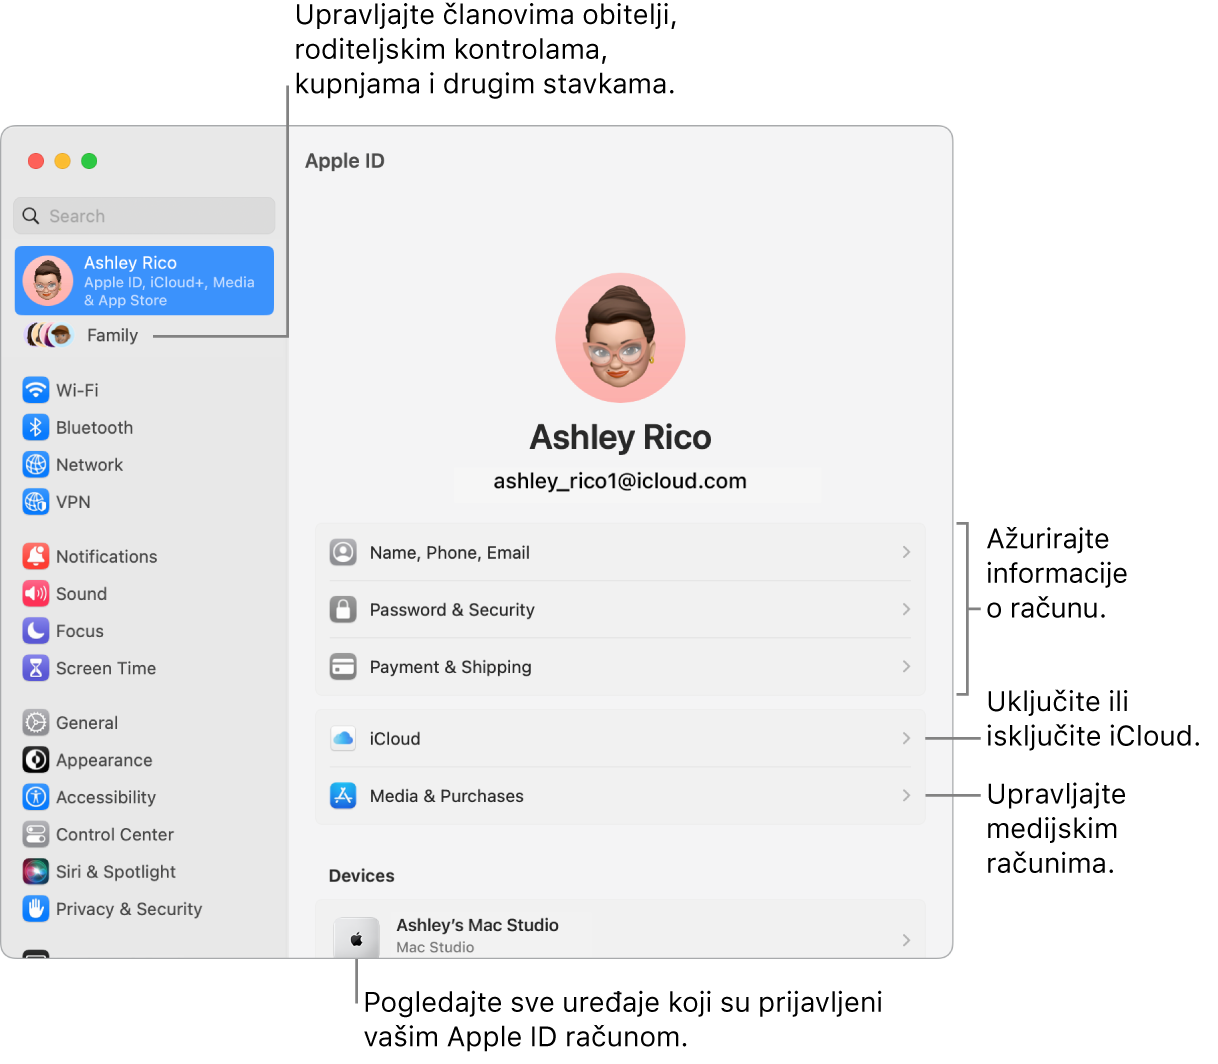 Postavke Apple ID-ja u Postavkama sustava s oblačićima za ažuriranje informacija o računu, uključivanje ili isključivanje značajki iClouda, upravljanje medijskim računima i Obitelji, gdje možete upravljati članovima obitelji, roditeljskim kontrolama, kupnjama i ostalim.